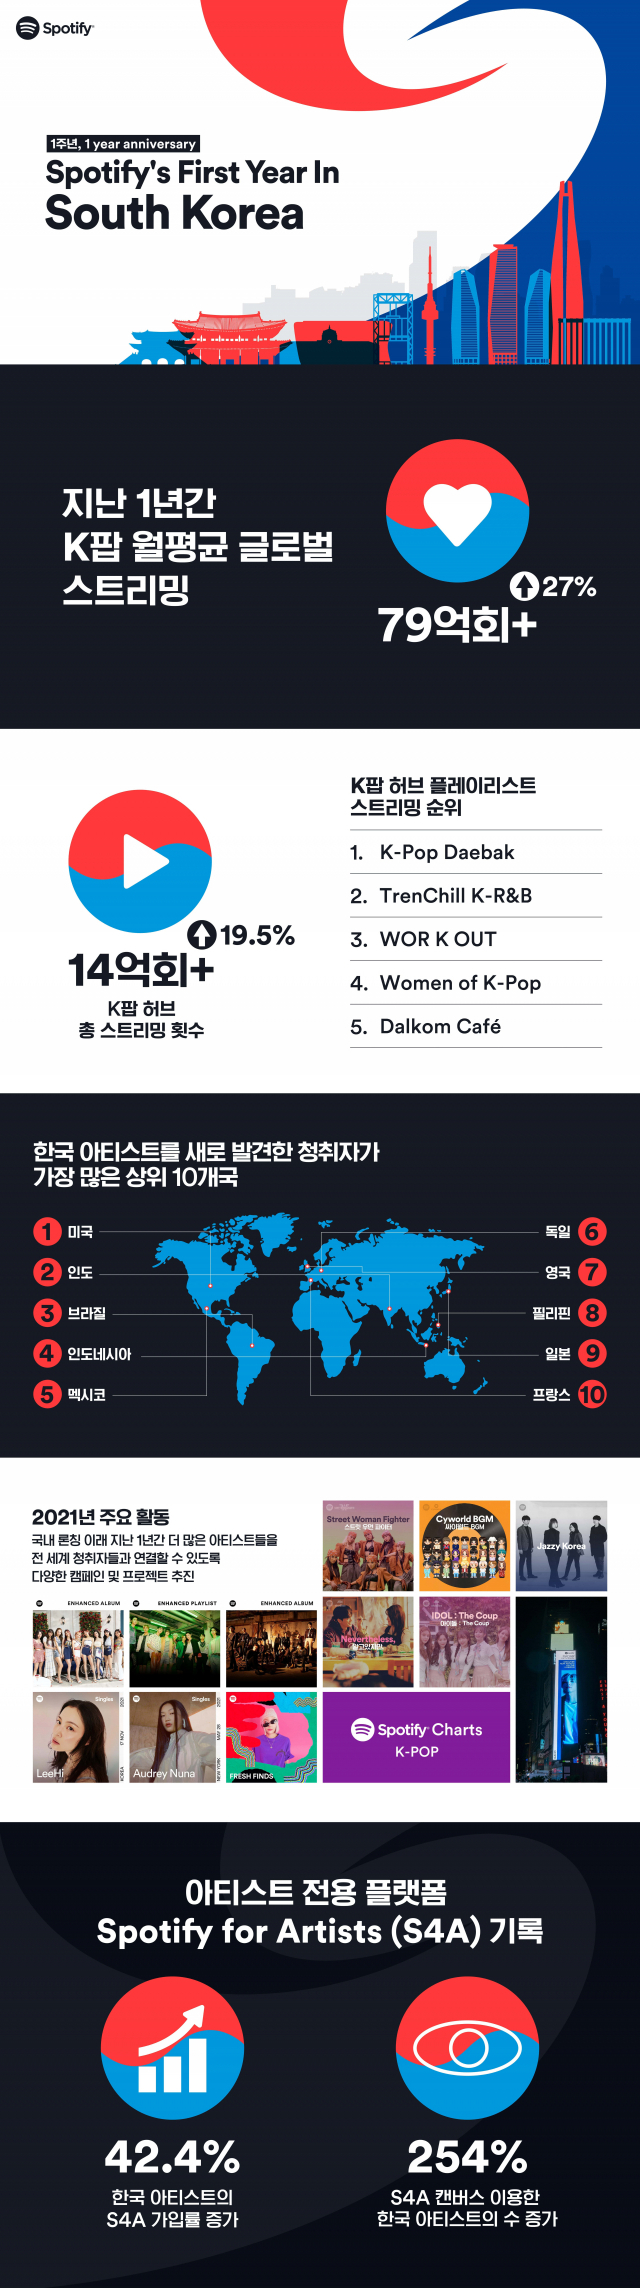 韓으로 온 세계 최대 음원플랫폼 스포티파이, 지난 1년 어땠나